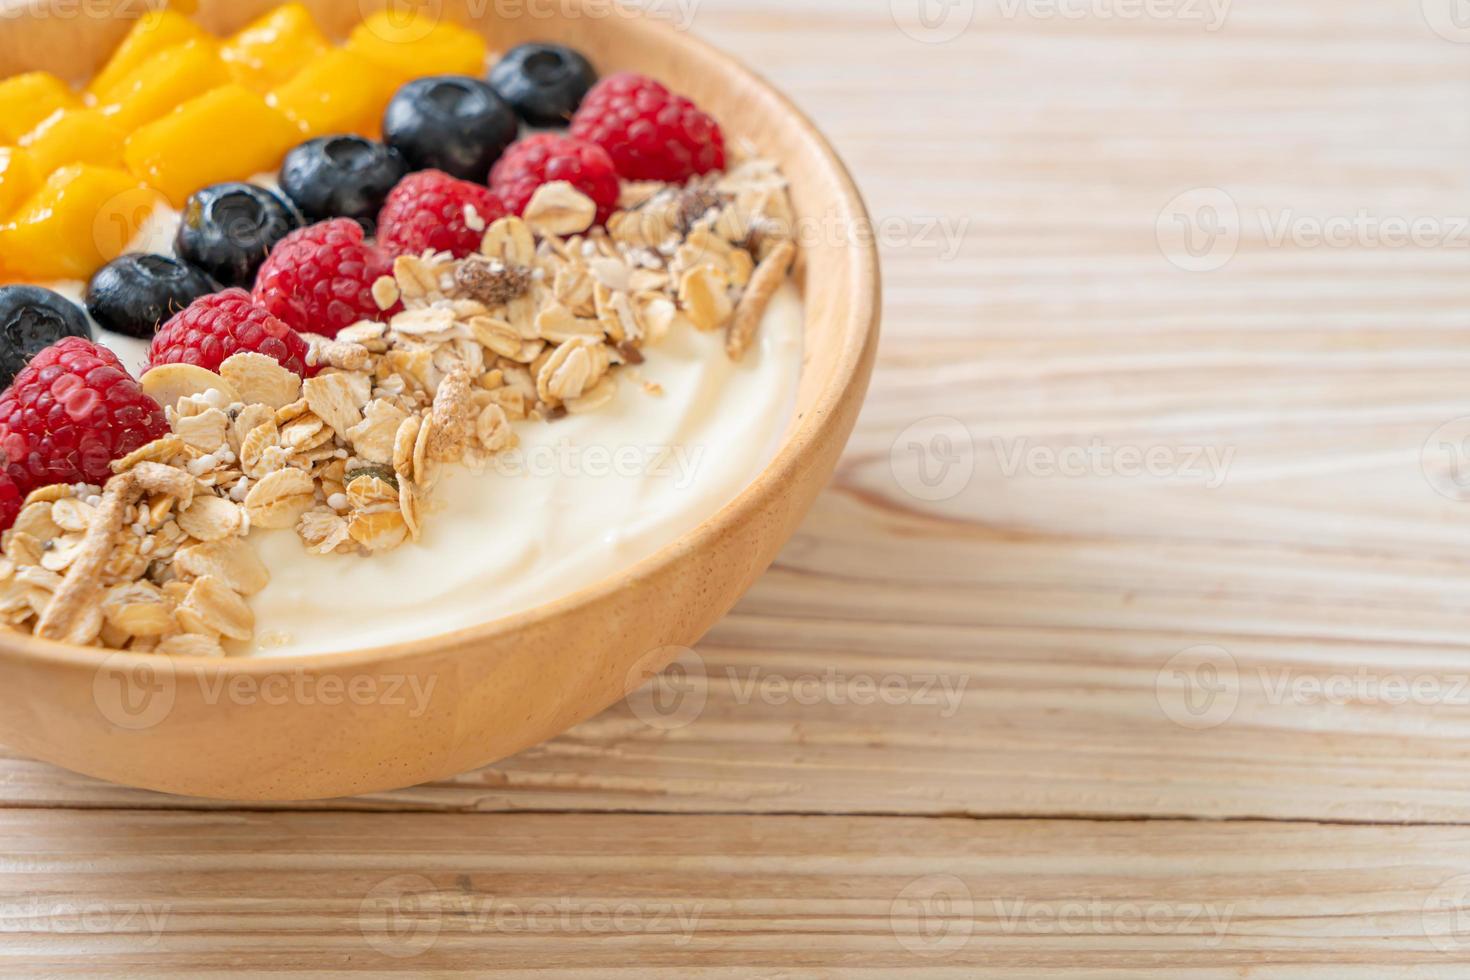 zelfgemaakte yoghurtkom met framboos, bosbes, mango en granola - gezonde voedingsstijl foto